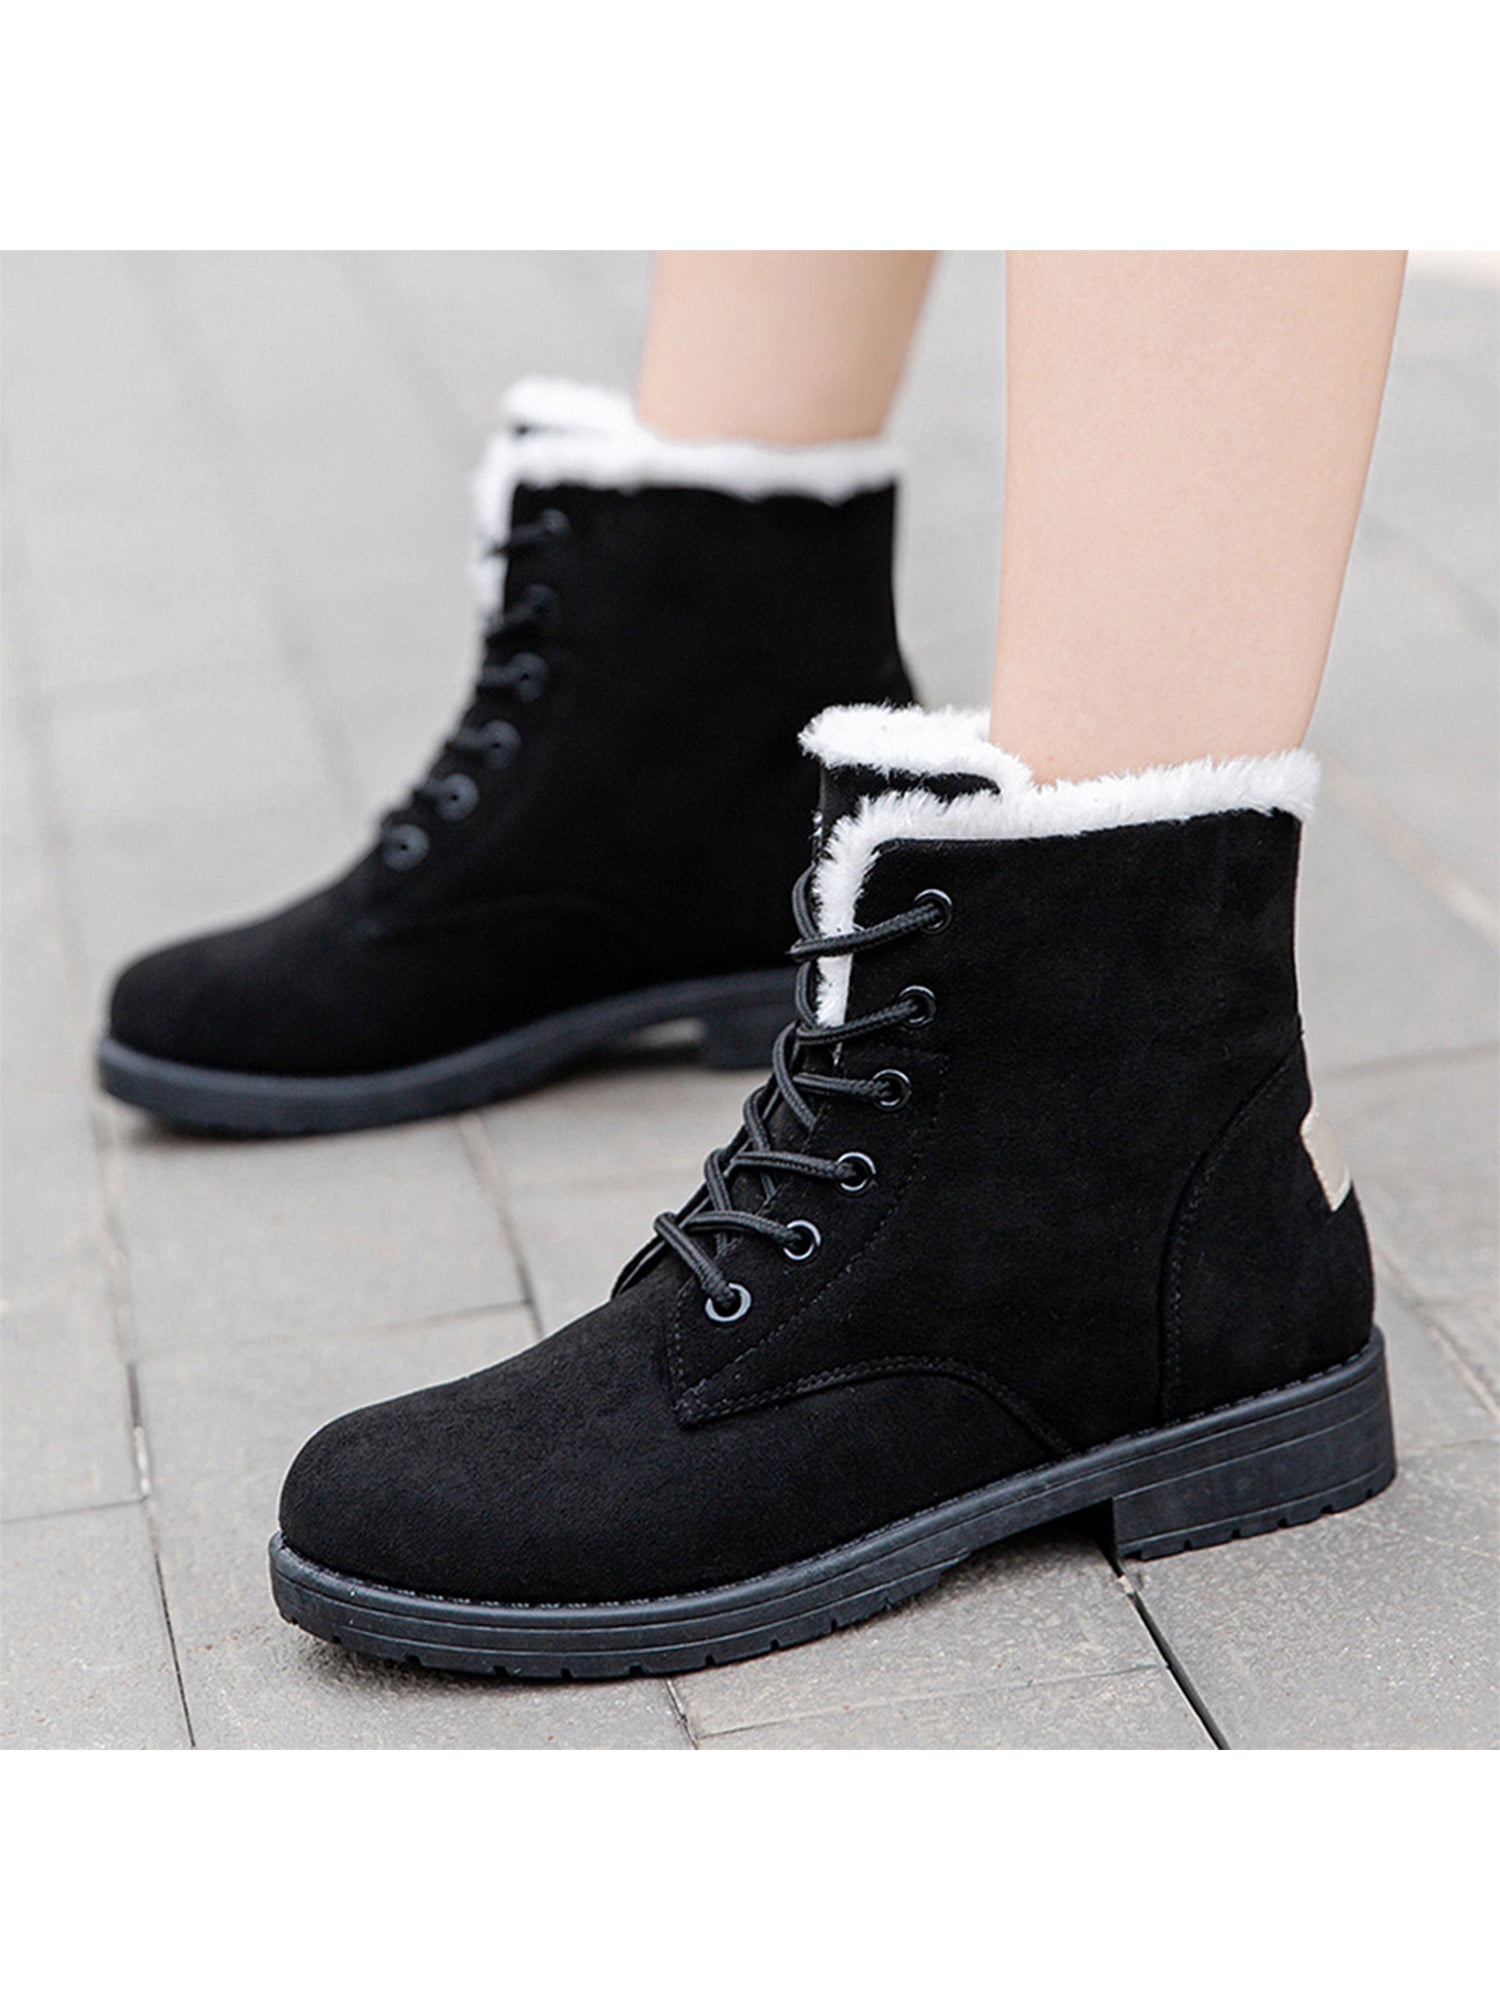 onregelmatig onderwijs zeemijl UKAP Women's Snow Boots Suede Winter Warm Booties Flat Lace Up Shoes Size 4- 49 - Walmart.com